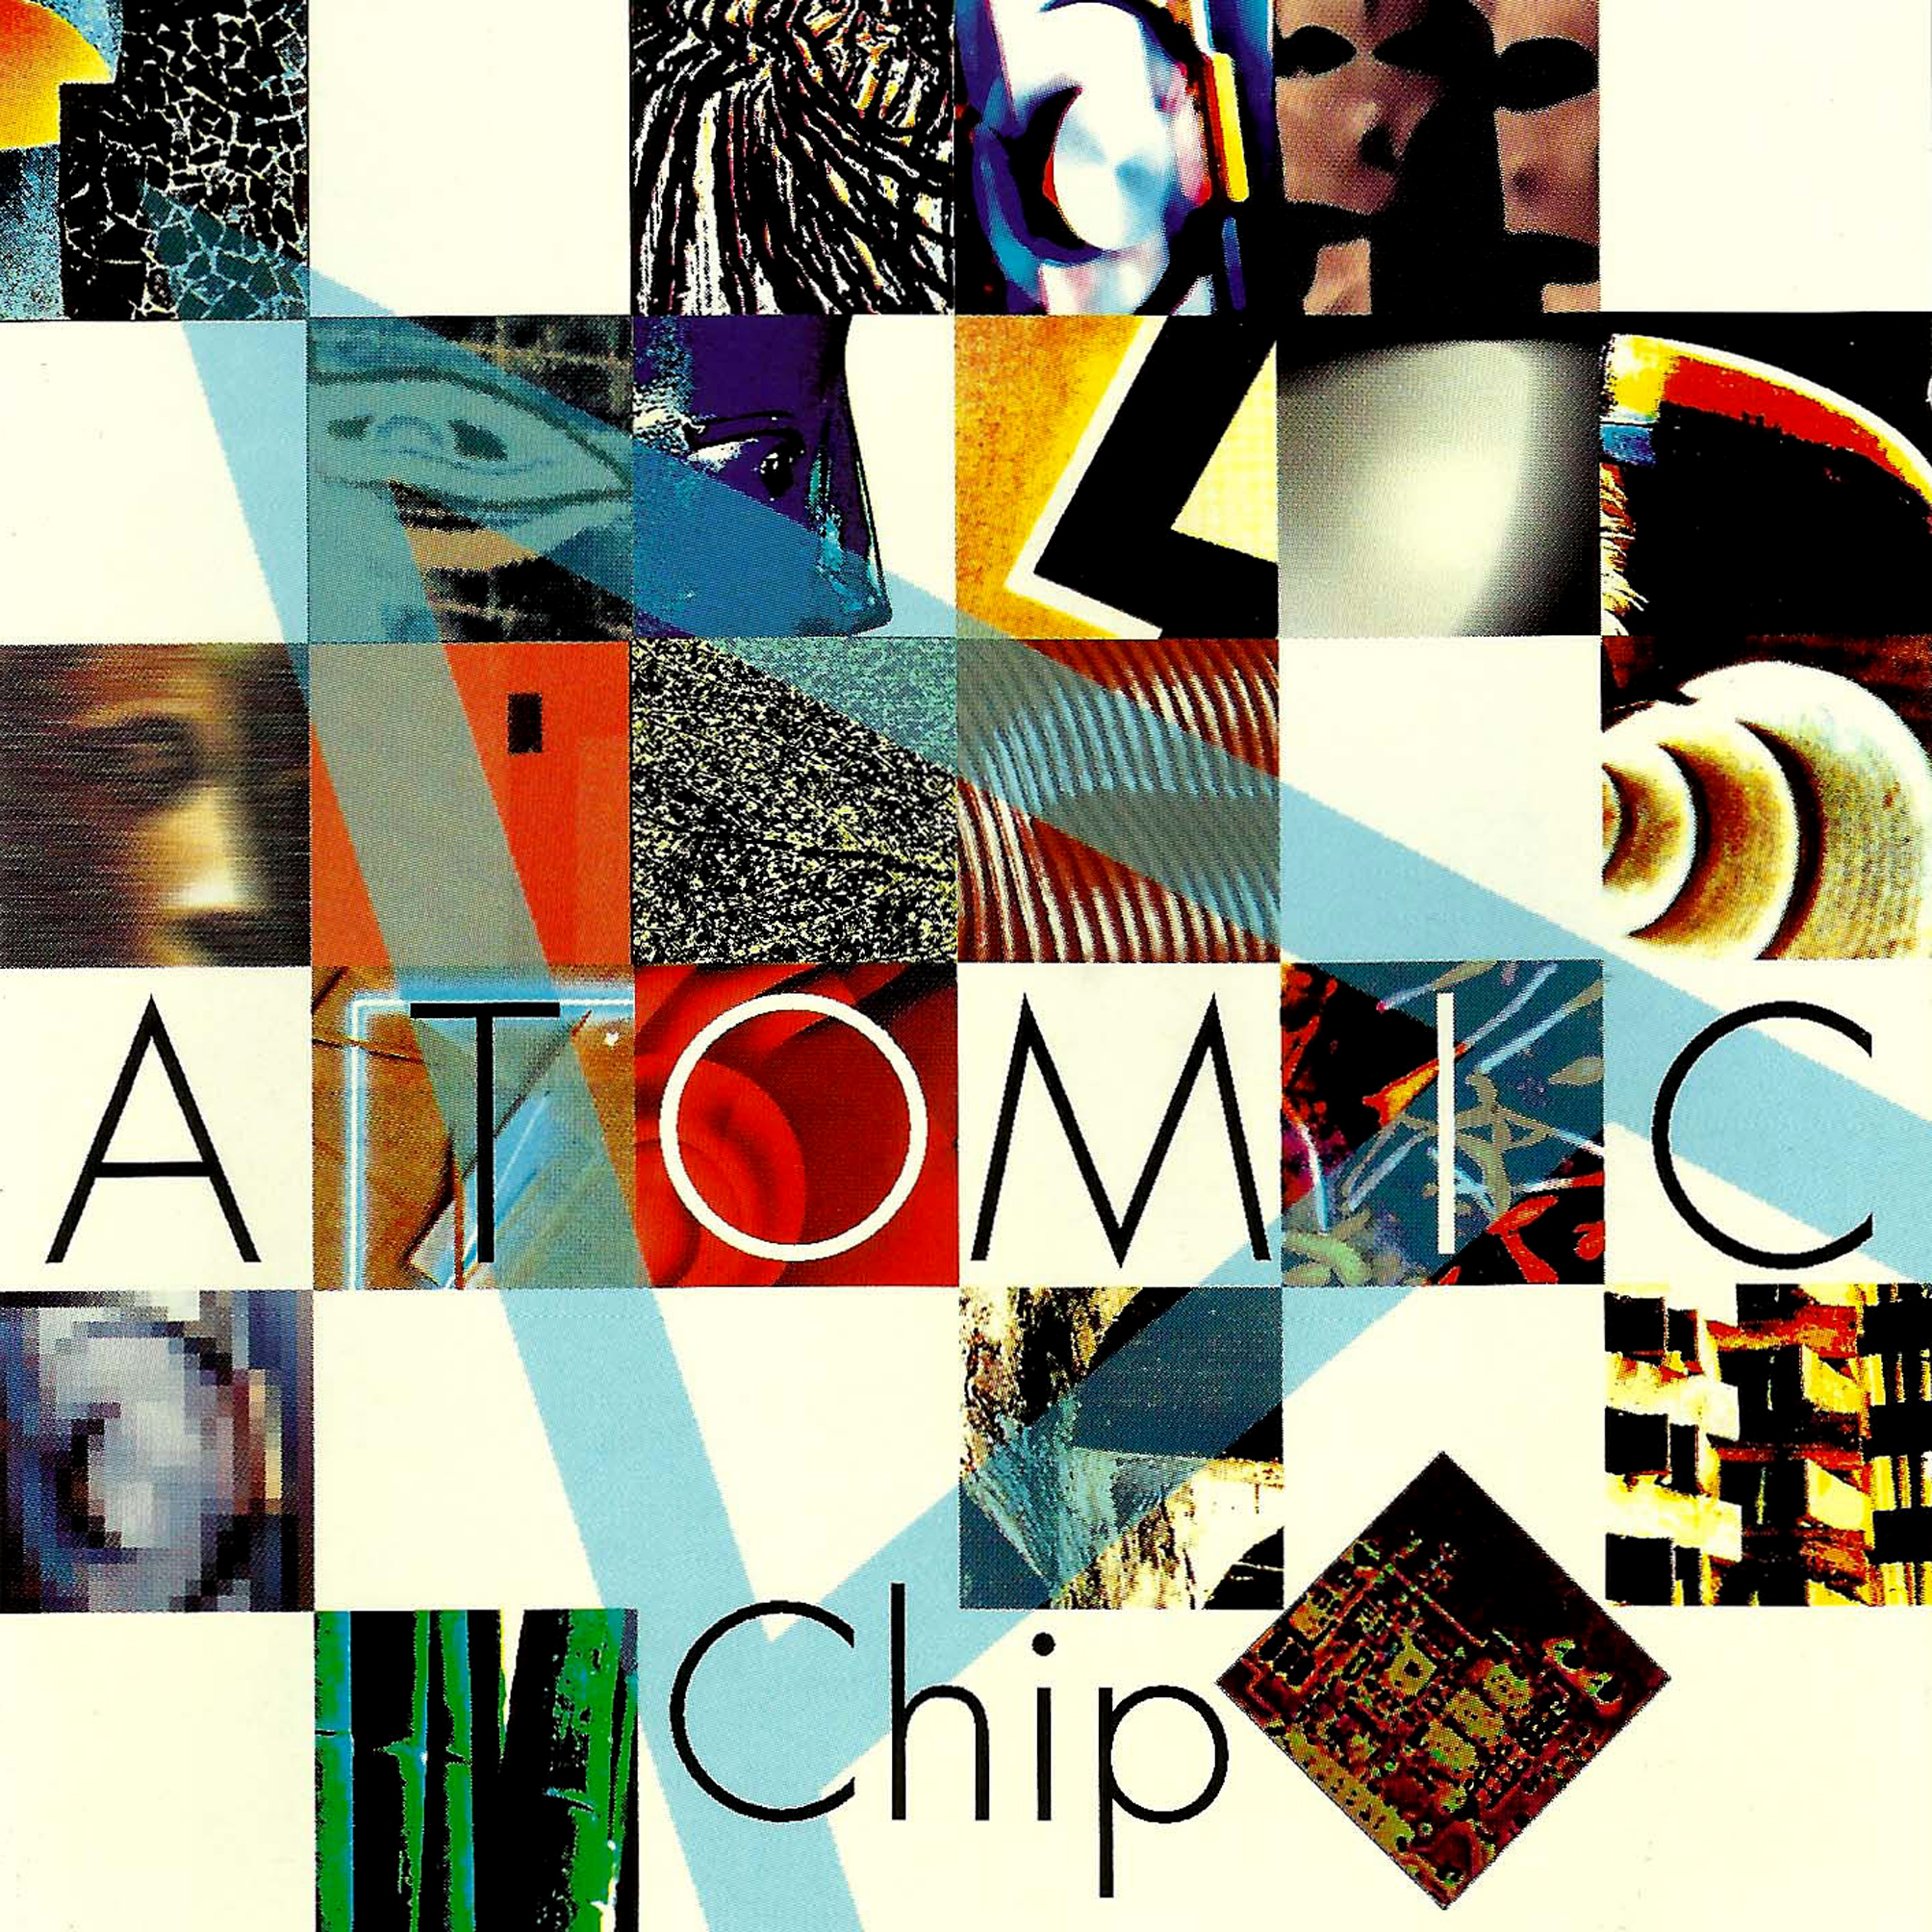 Atomic Chip